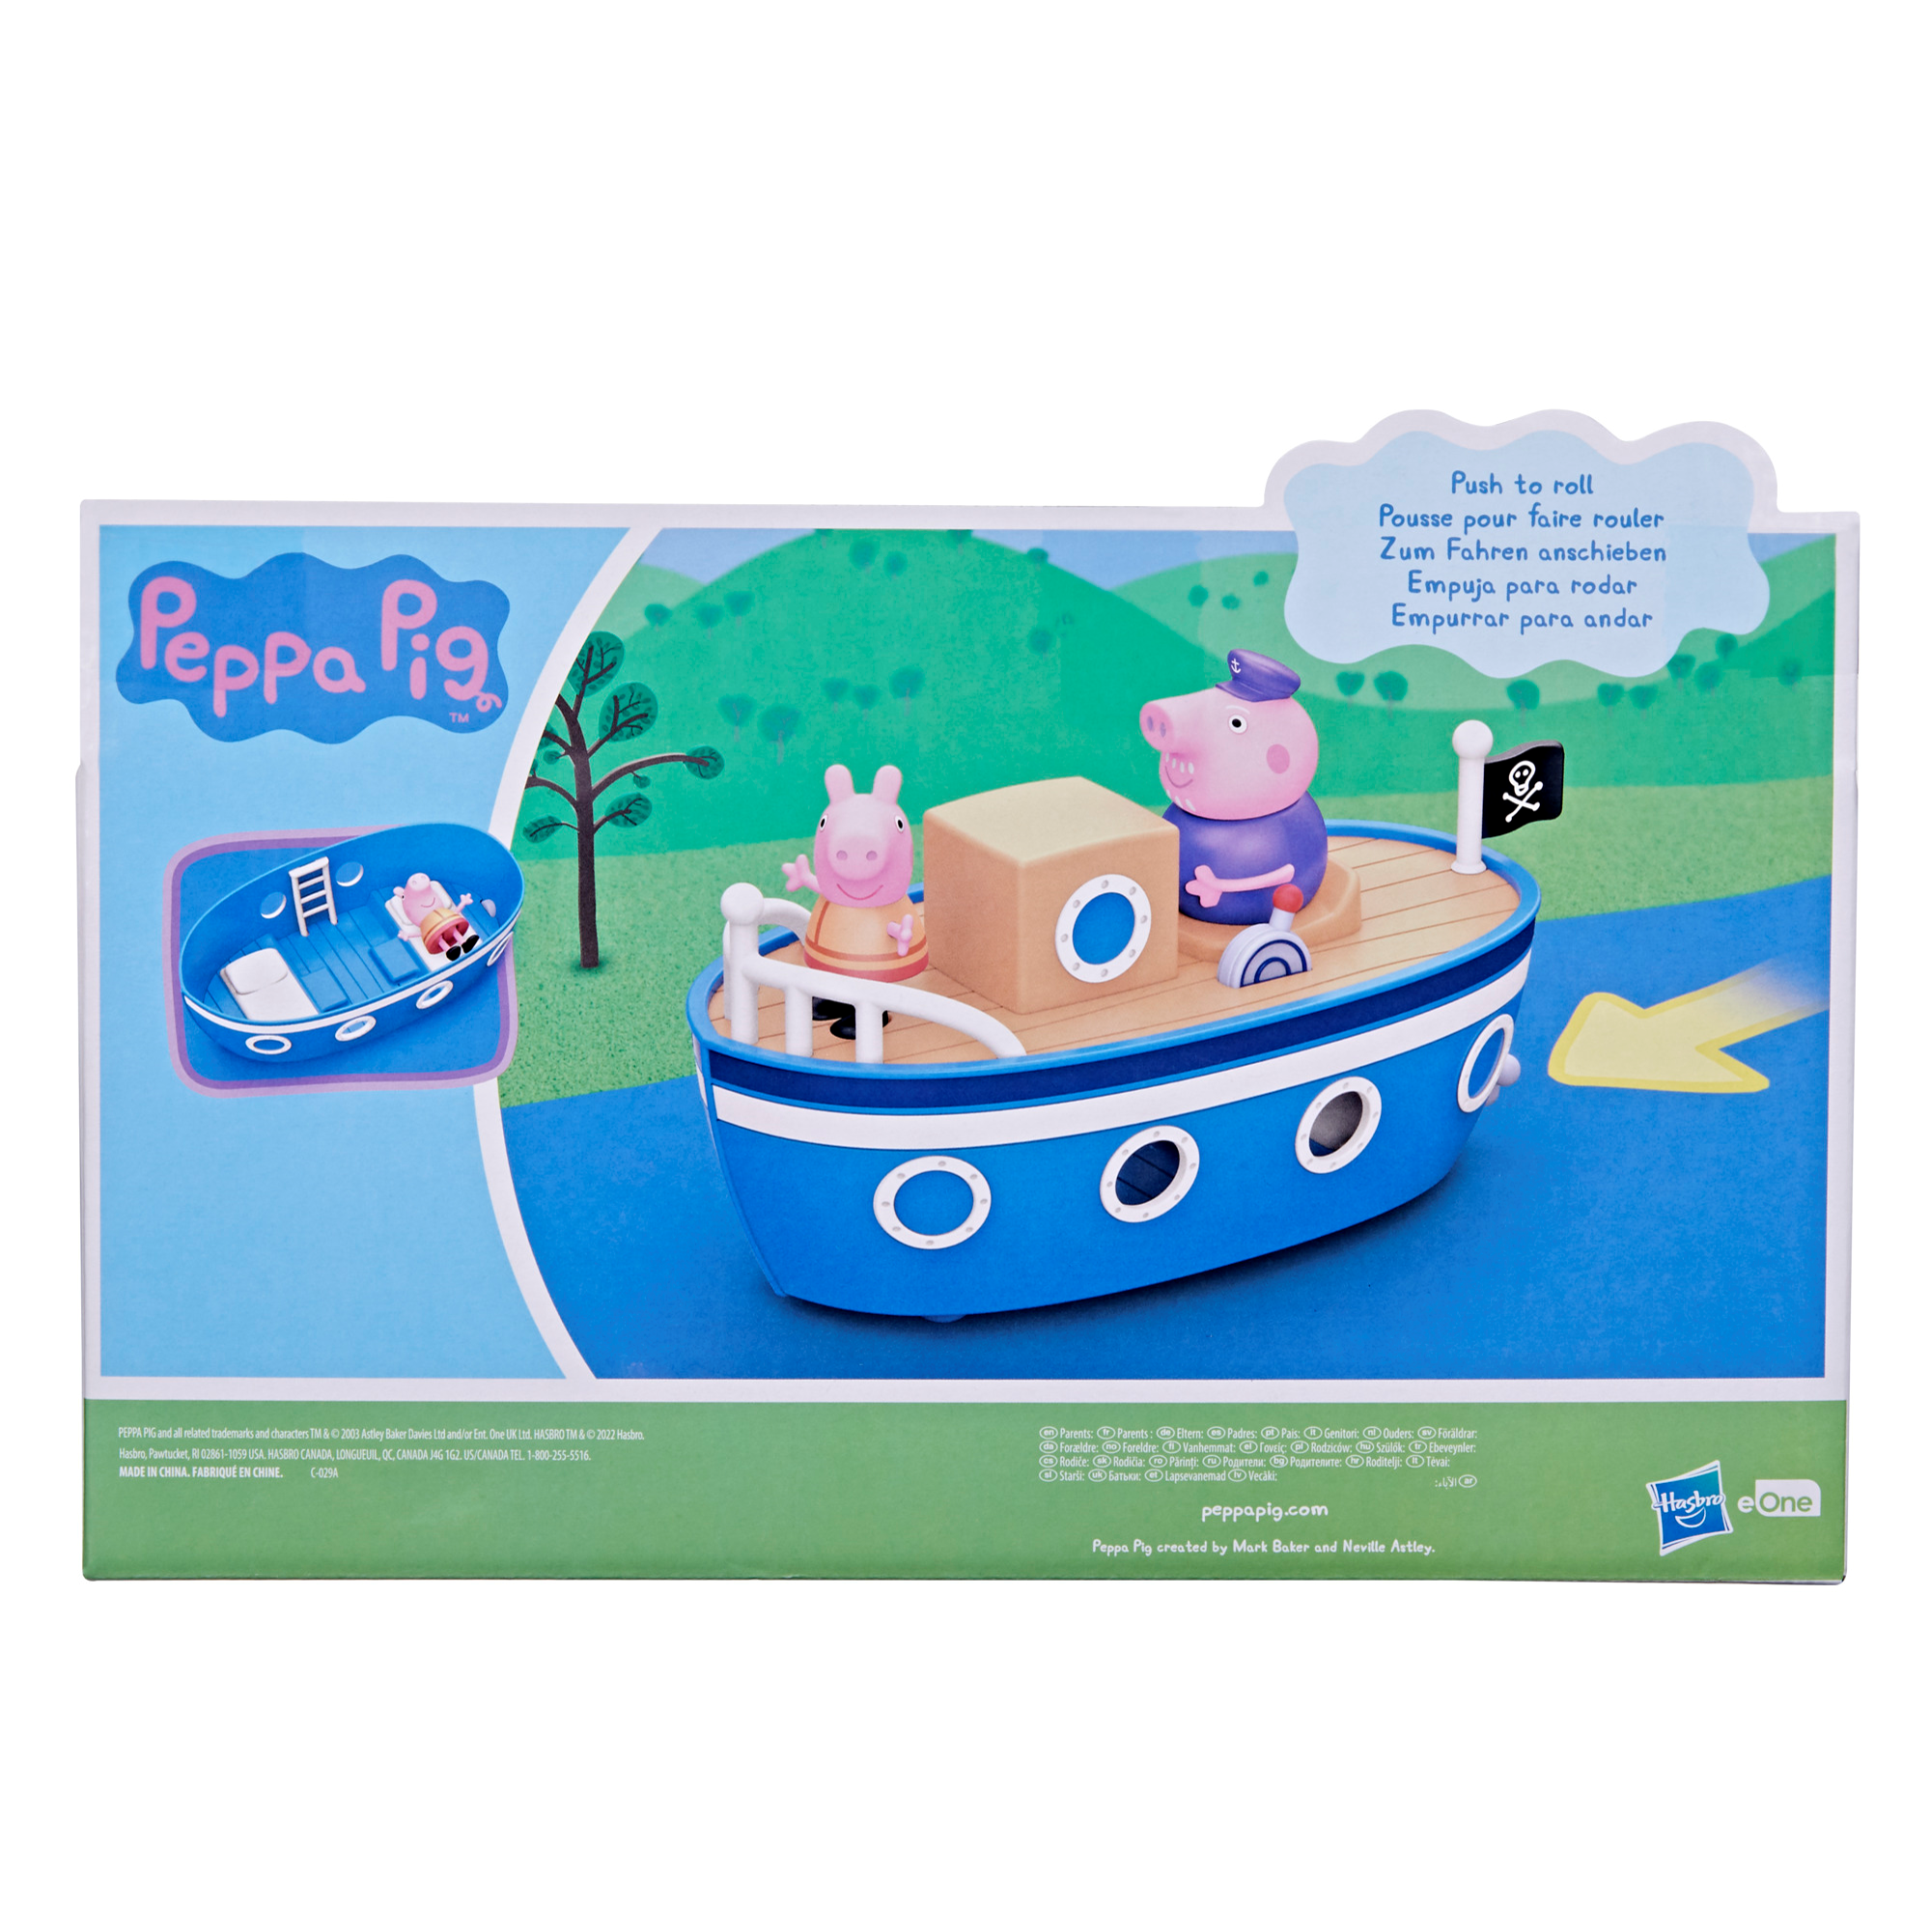 Peppa pig - la barca di nonno pig, barca giocattolo per età prescolare con 1 personaggio, dai 3 anni in su - PEPPA PIG